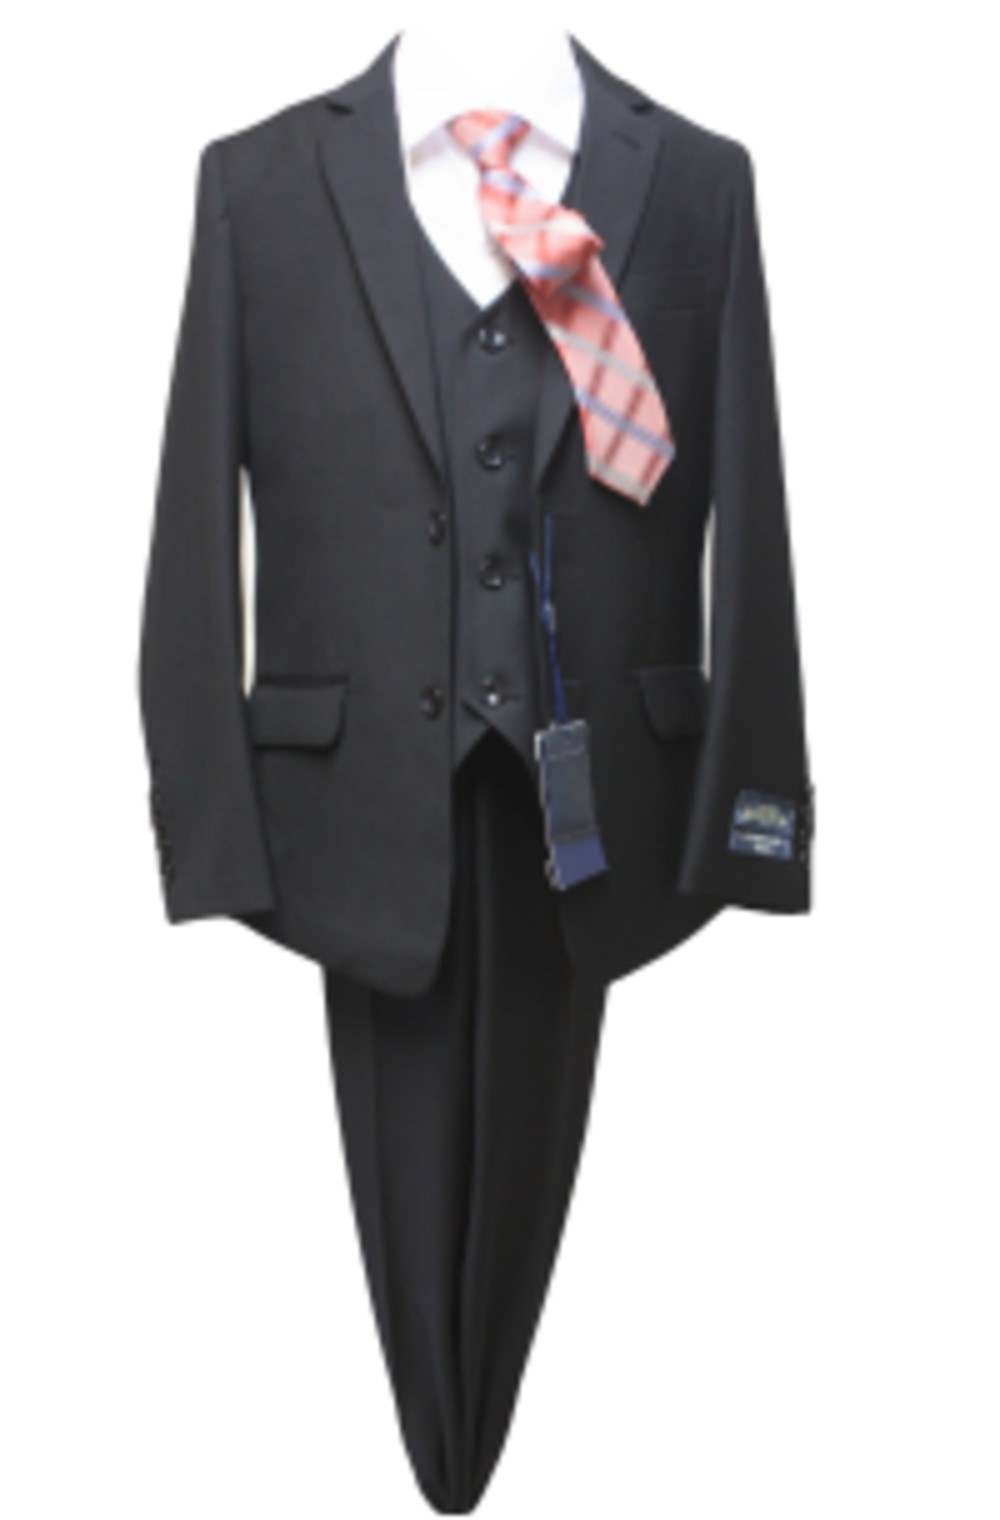 Suit #2